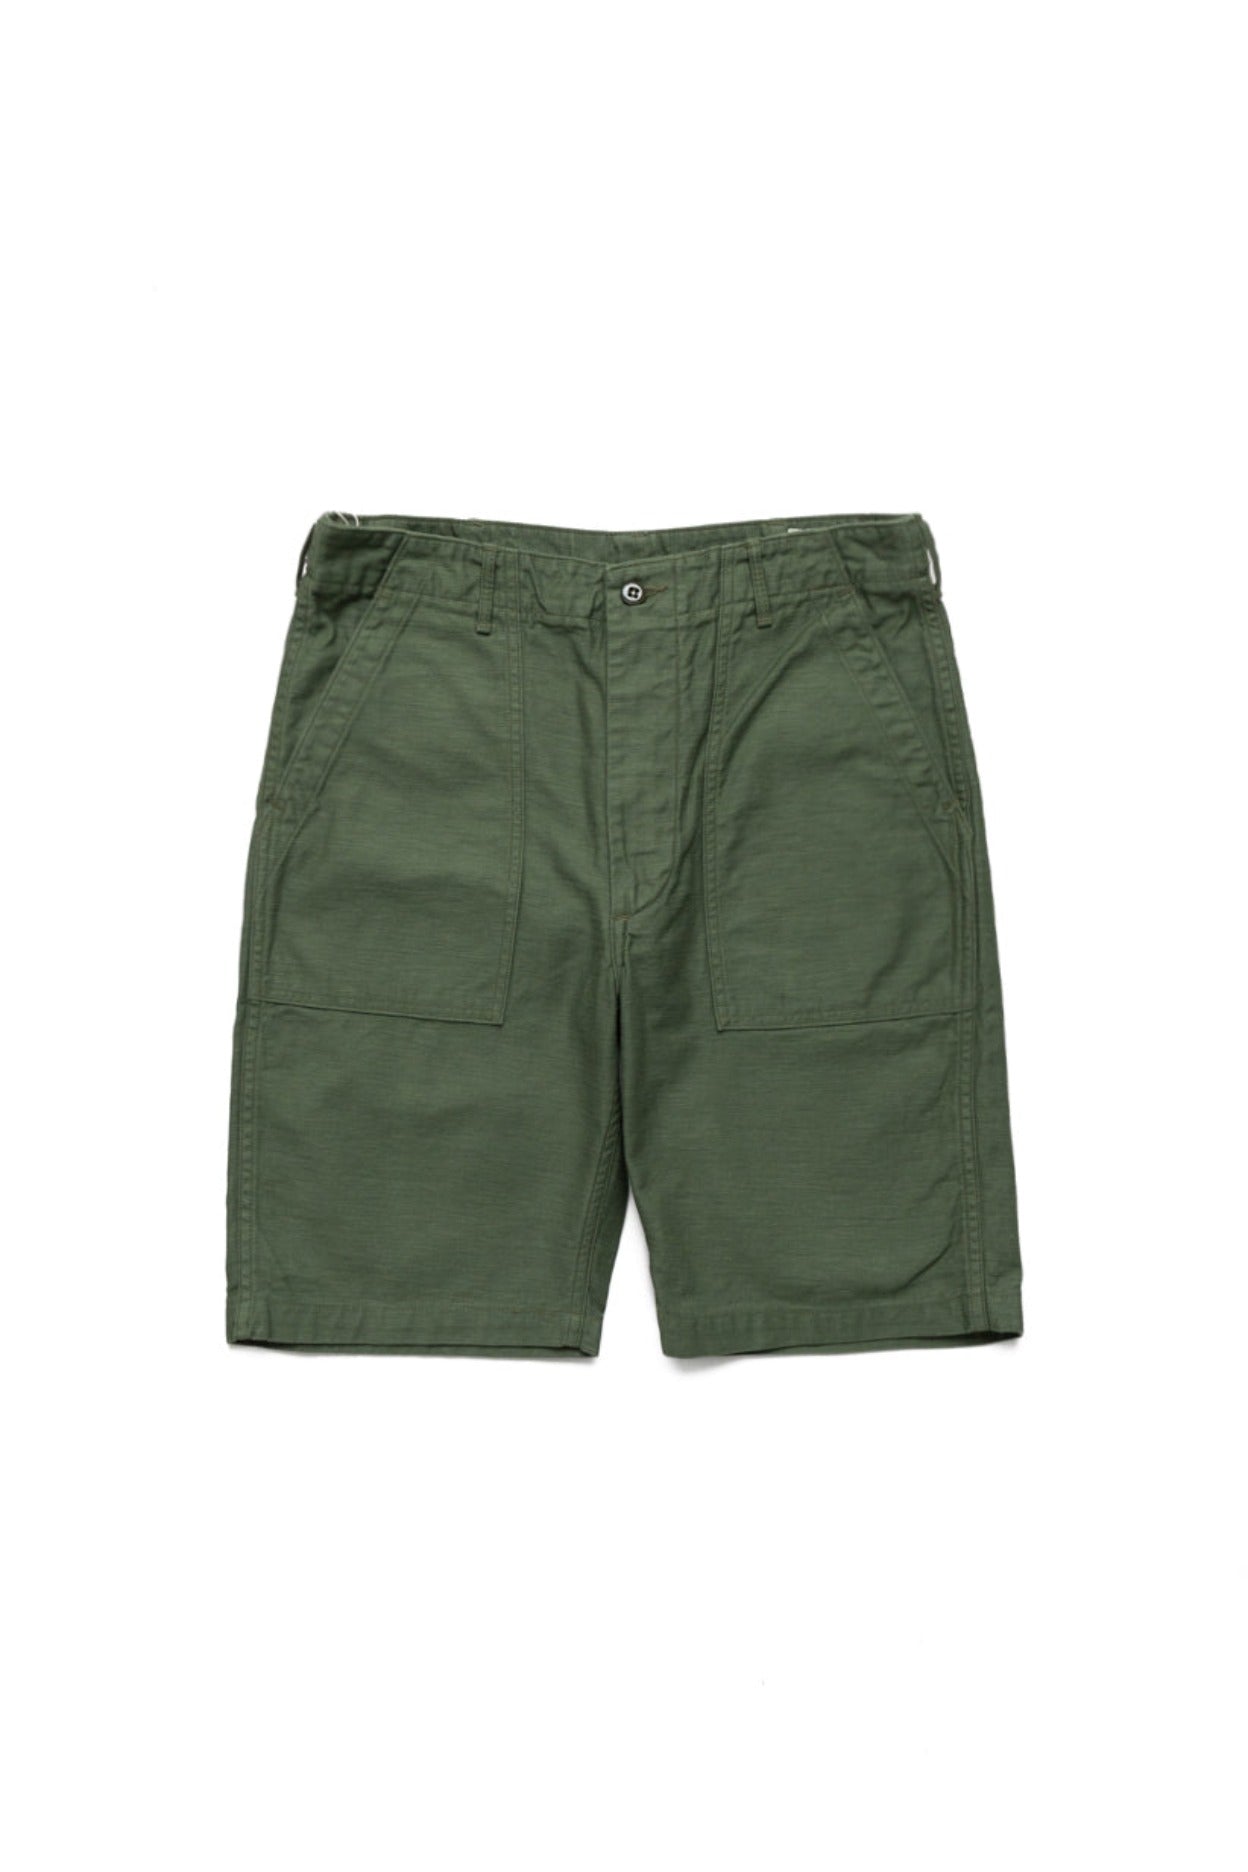 US Army Fatigue Shorts - Green